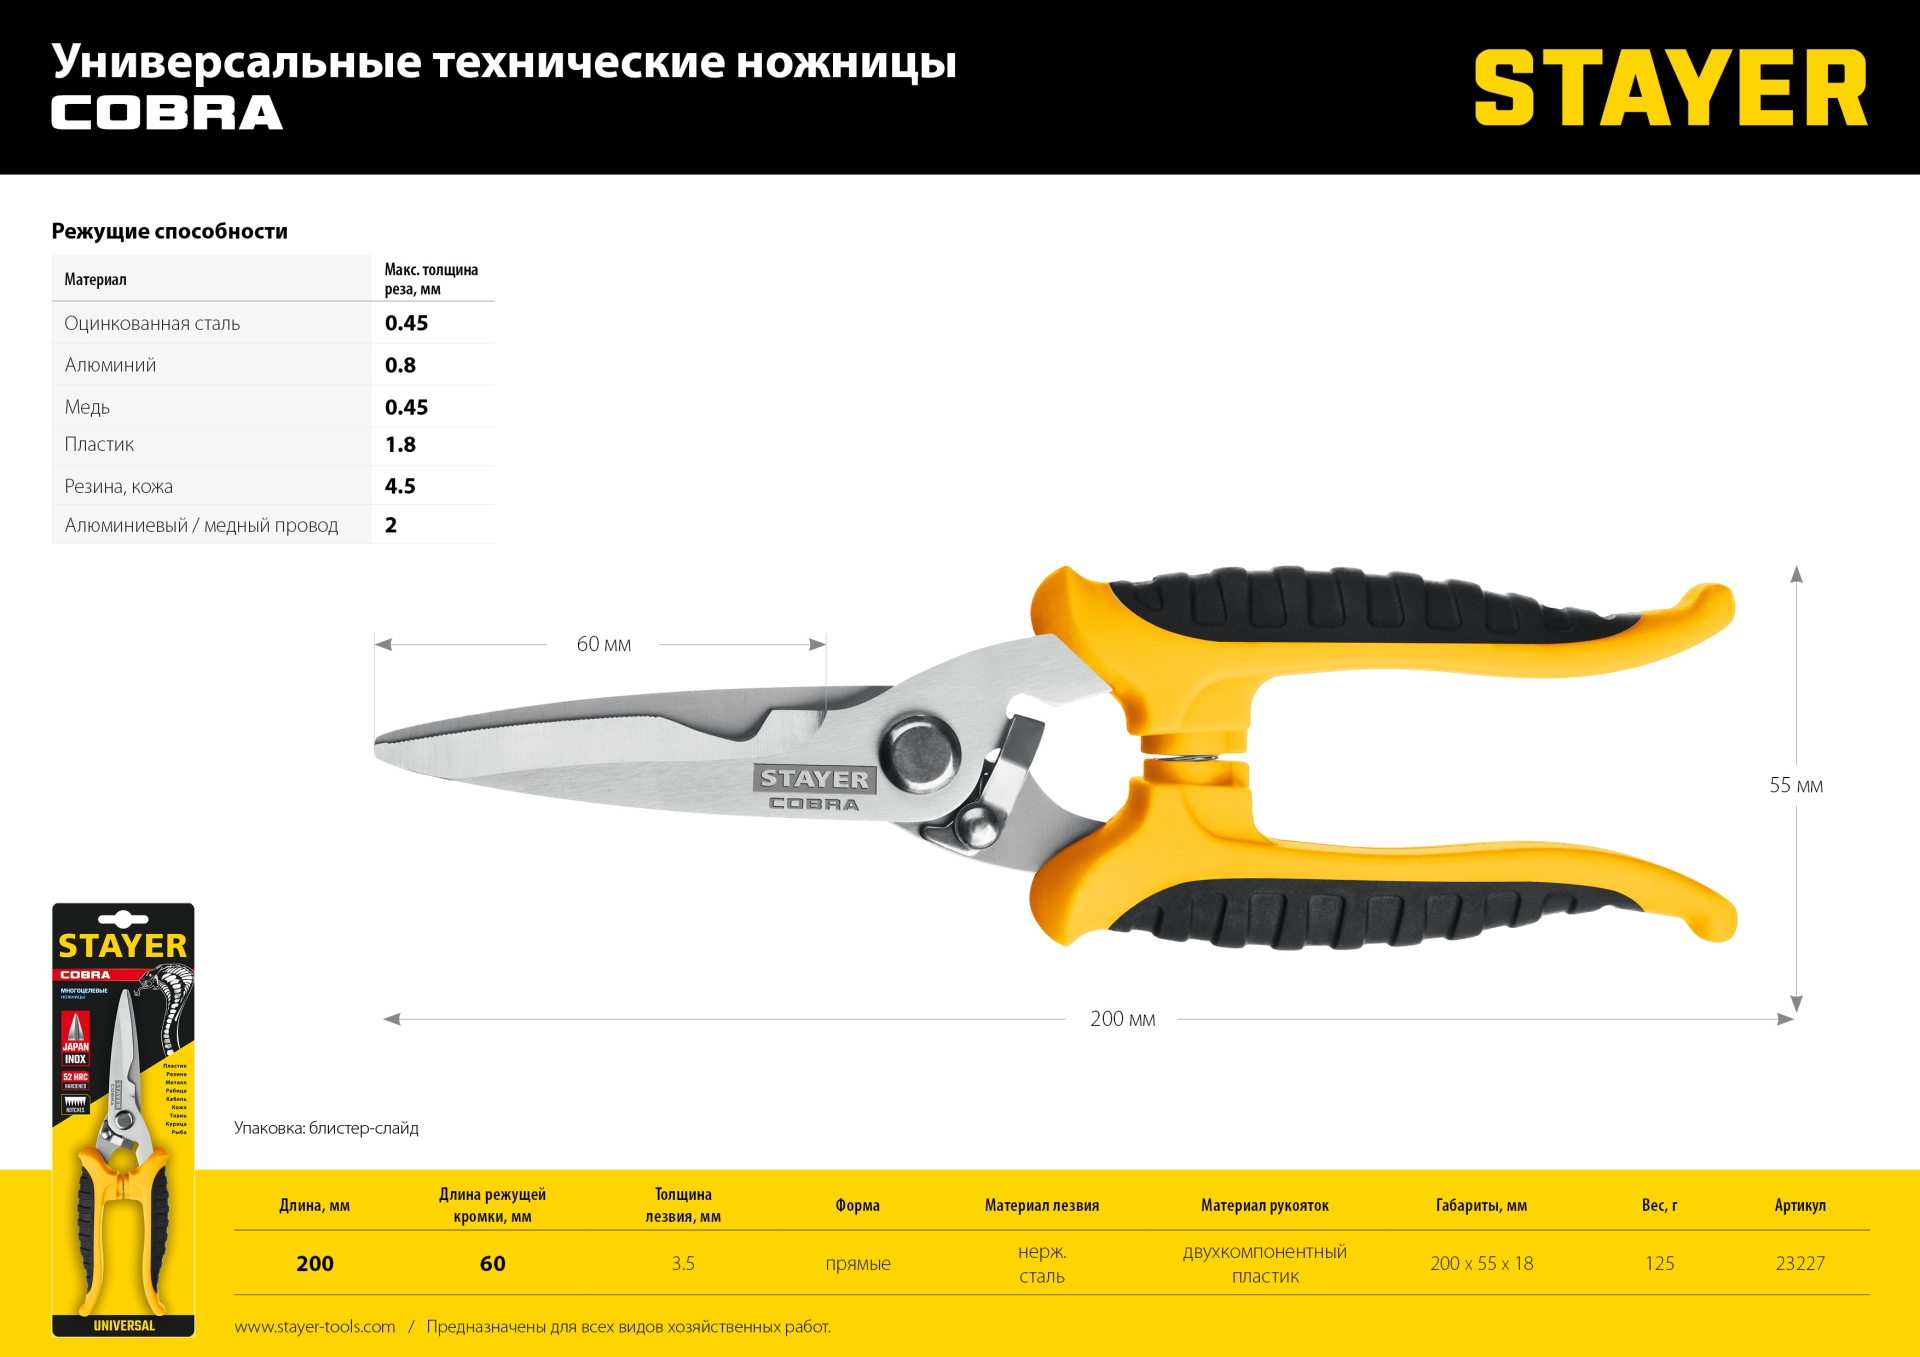 STAYER COBRA, 200 мм, Универсальные технические ножницы, Professional (23227)